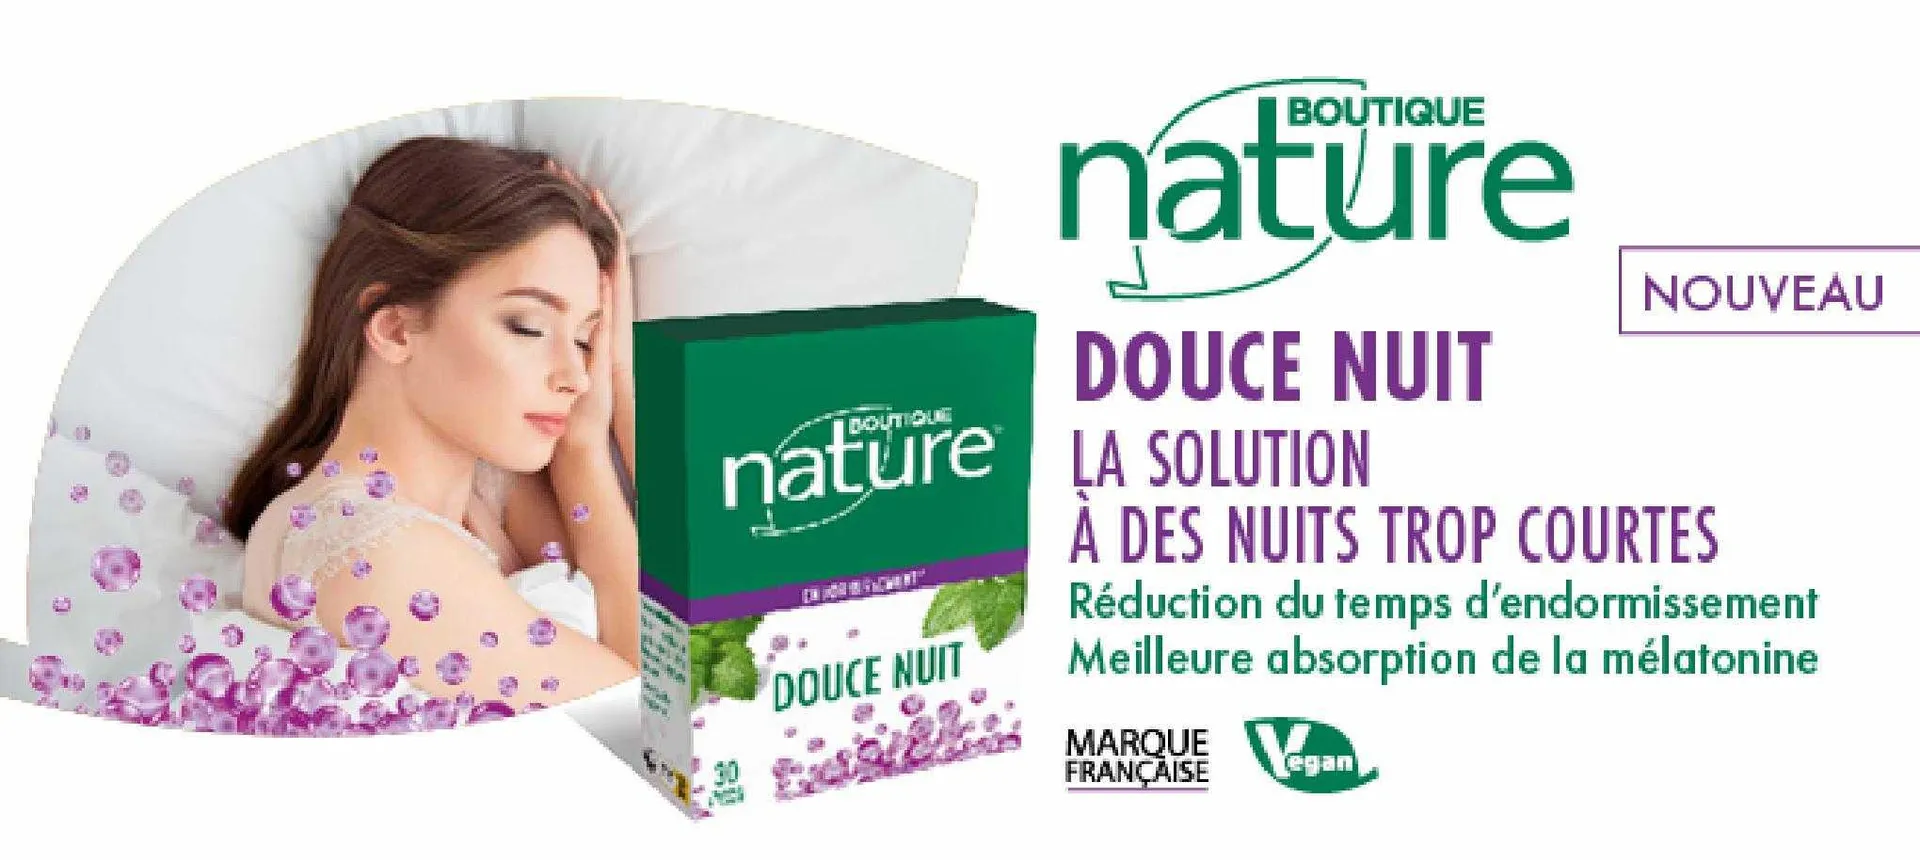 Catalogue Boutique Nature - 2